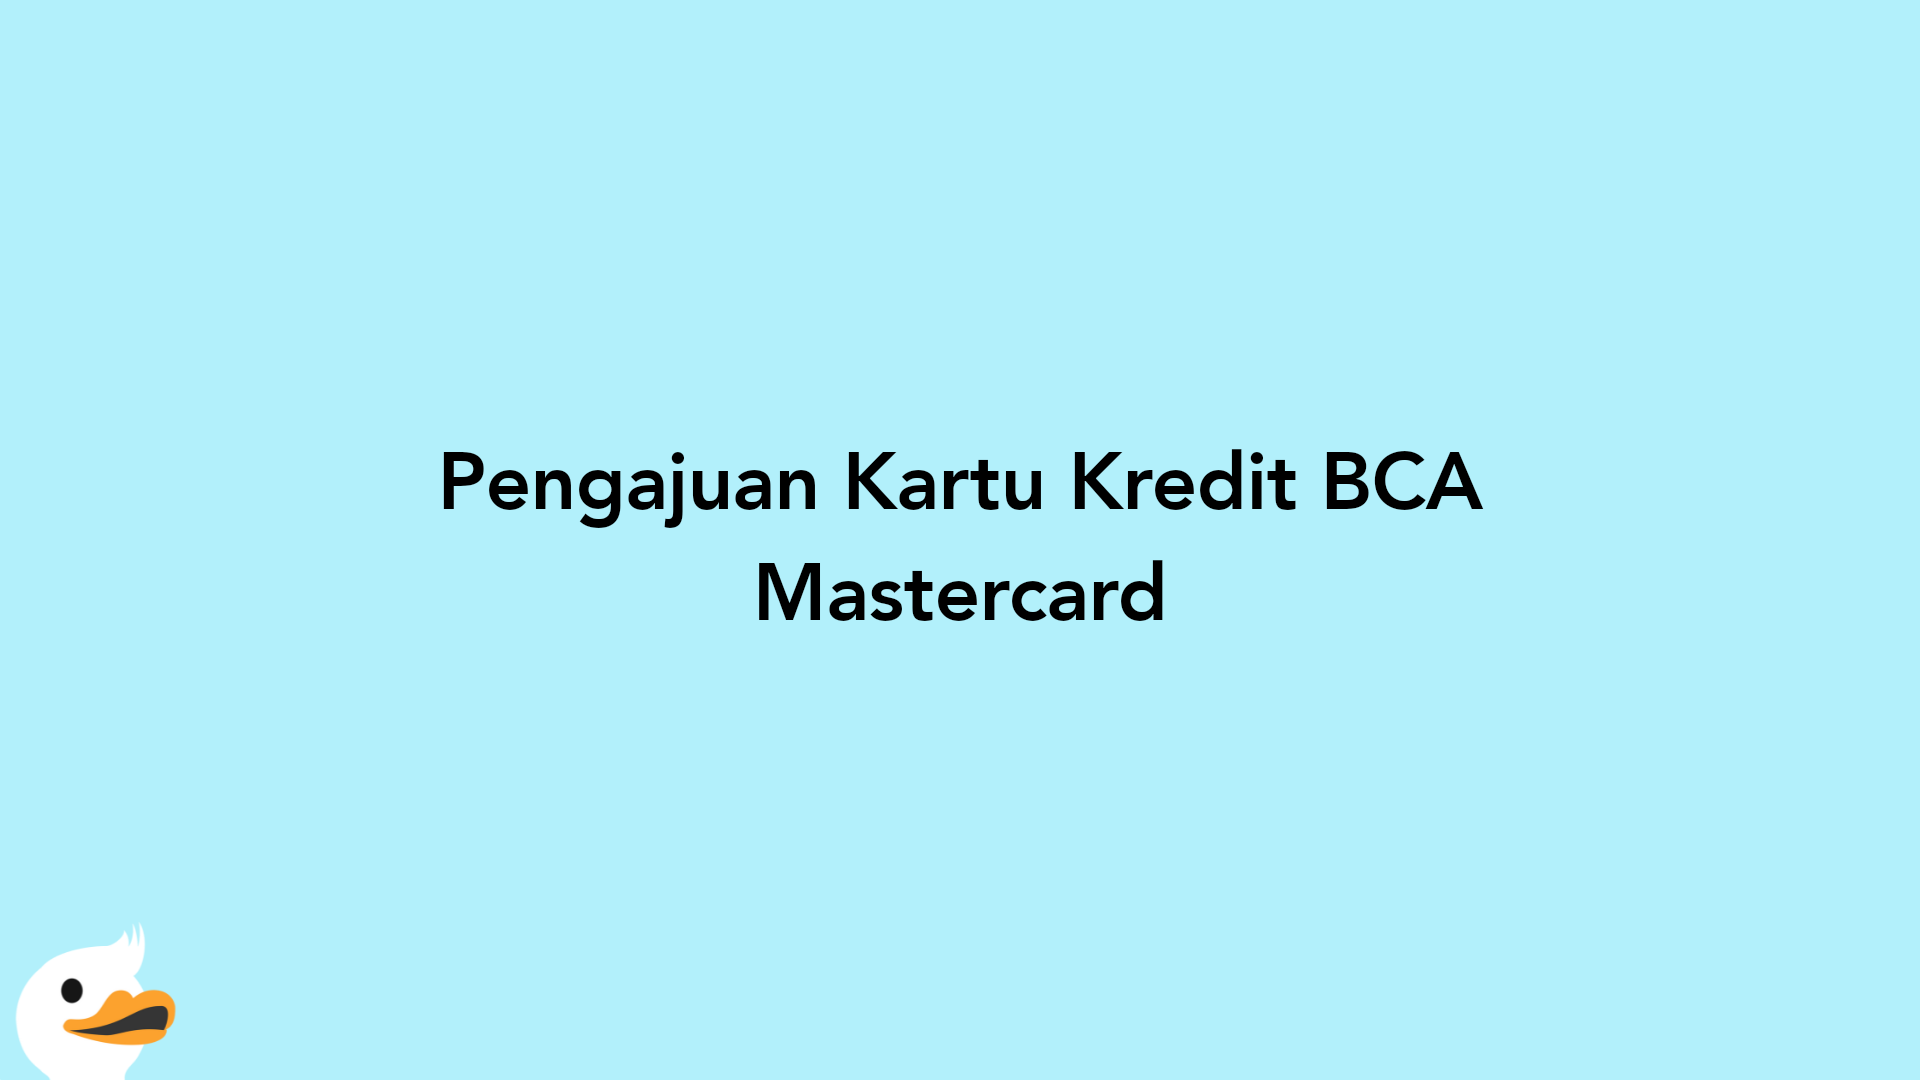 Pengajuan Kartu Kredit BCA Mastercard